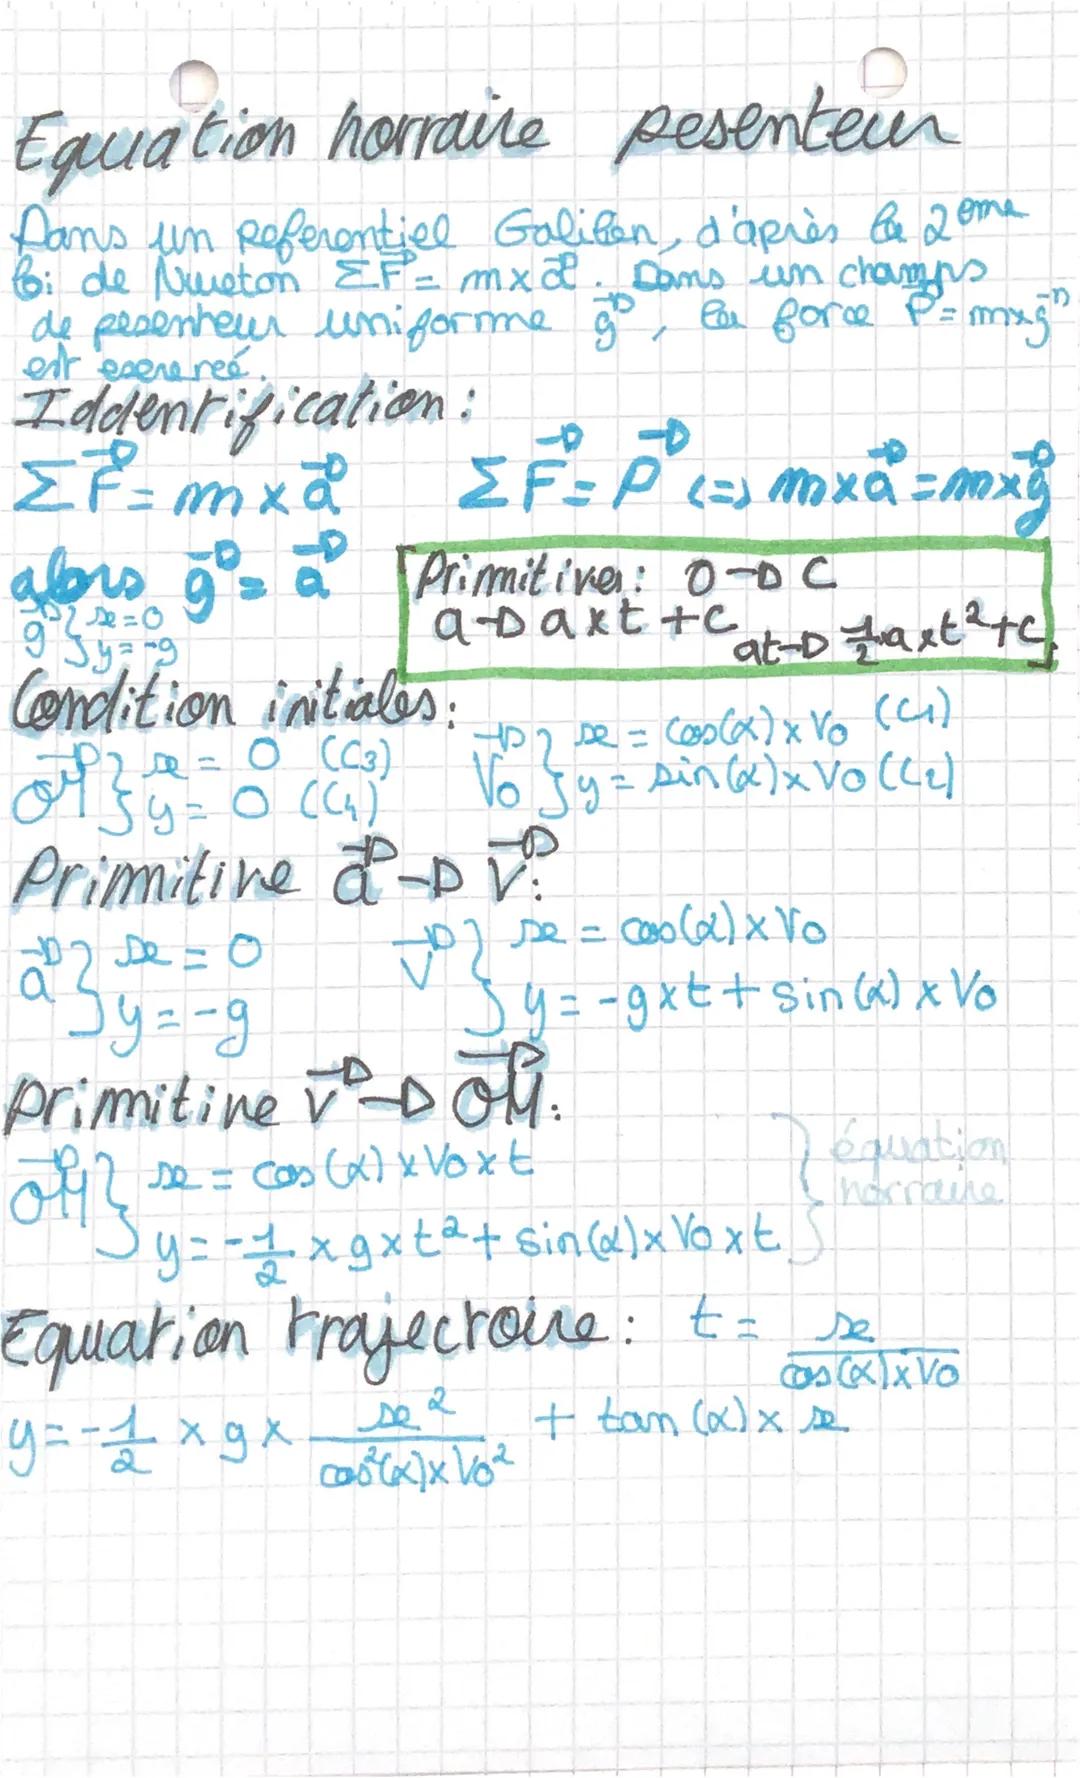 Equation horraine pesenteur
Dans un Referentiel Galifen, d'après le 2ome
bi de Nureton EF = mxd. Dans un champs
de pesenheur uniforme go, la